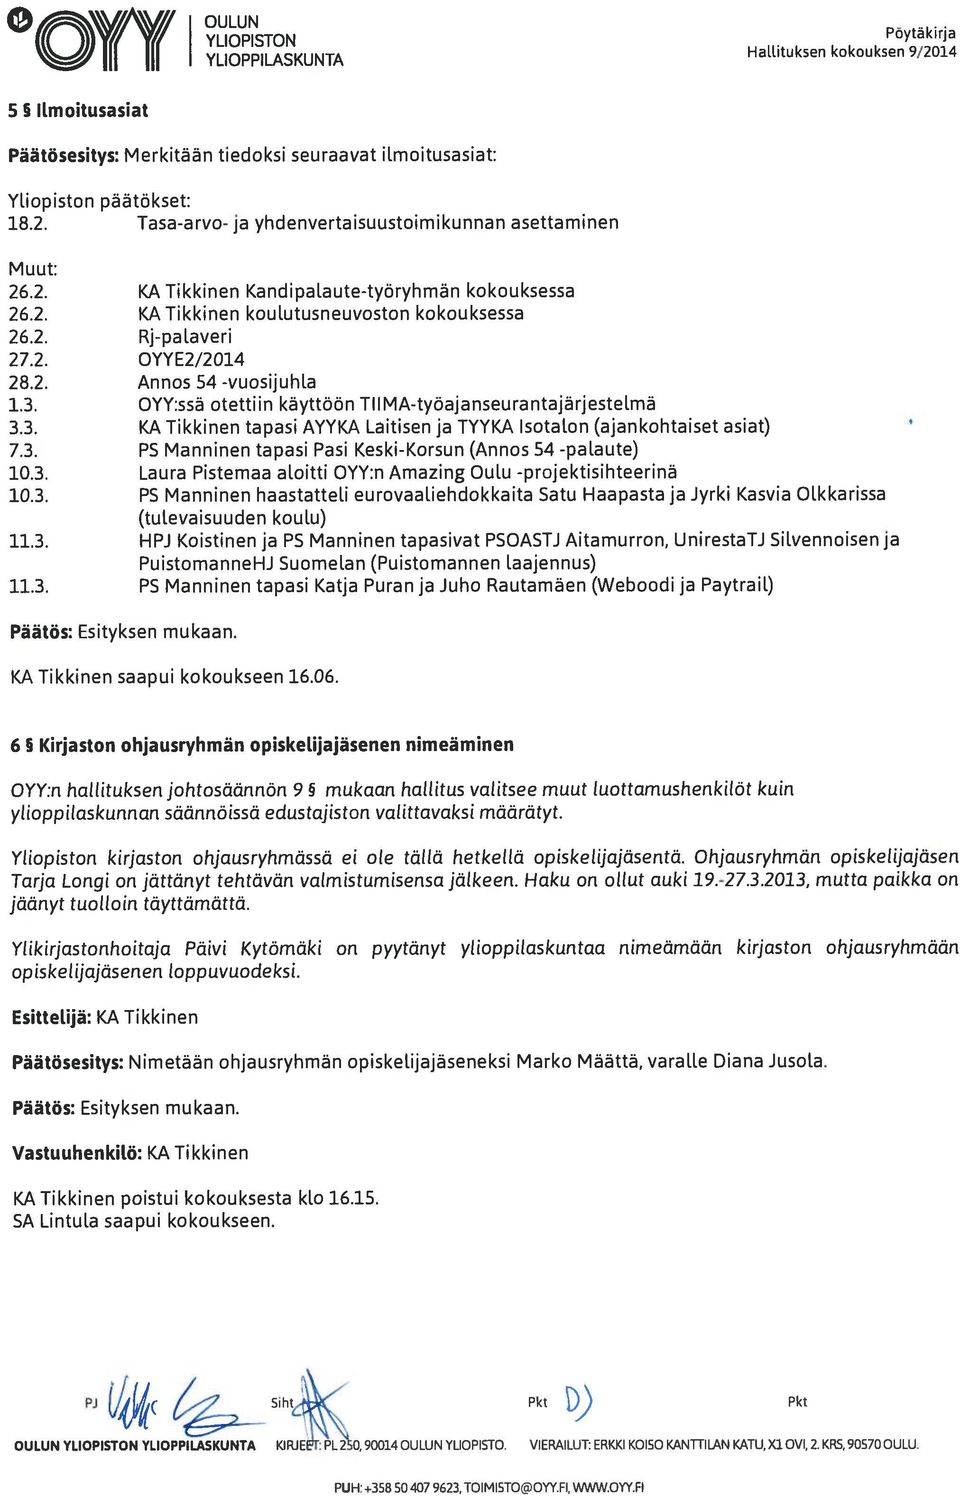 OYY:ssä otettiin käyttöön TIIMA-työajanseurantajärjestelmä 3.3. KA Tikkinen tapasi AYYKA Laitisen ja TYYKA Isotalon (ajankohtaiset asiat) 7.3. PS Manninen tapasi Pasi Keski-Korsun (Annos 54 -palaute) 10.